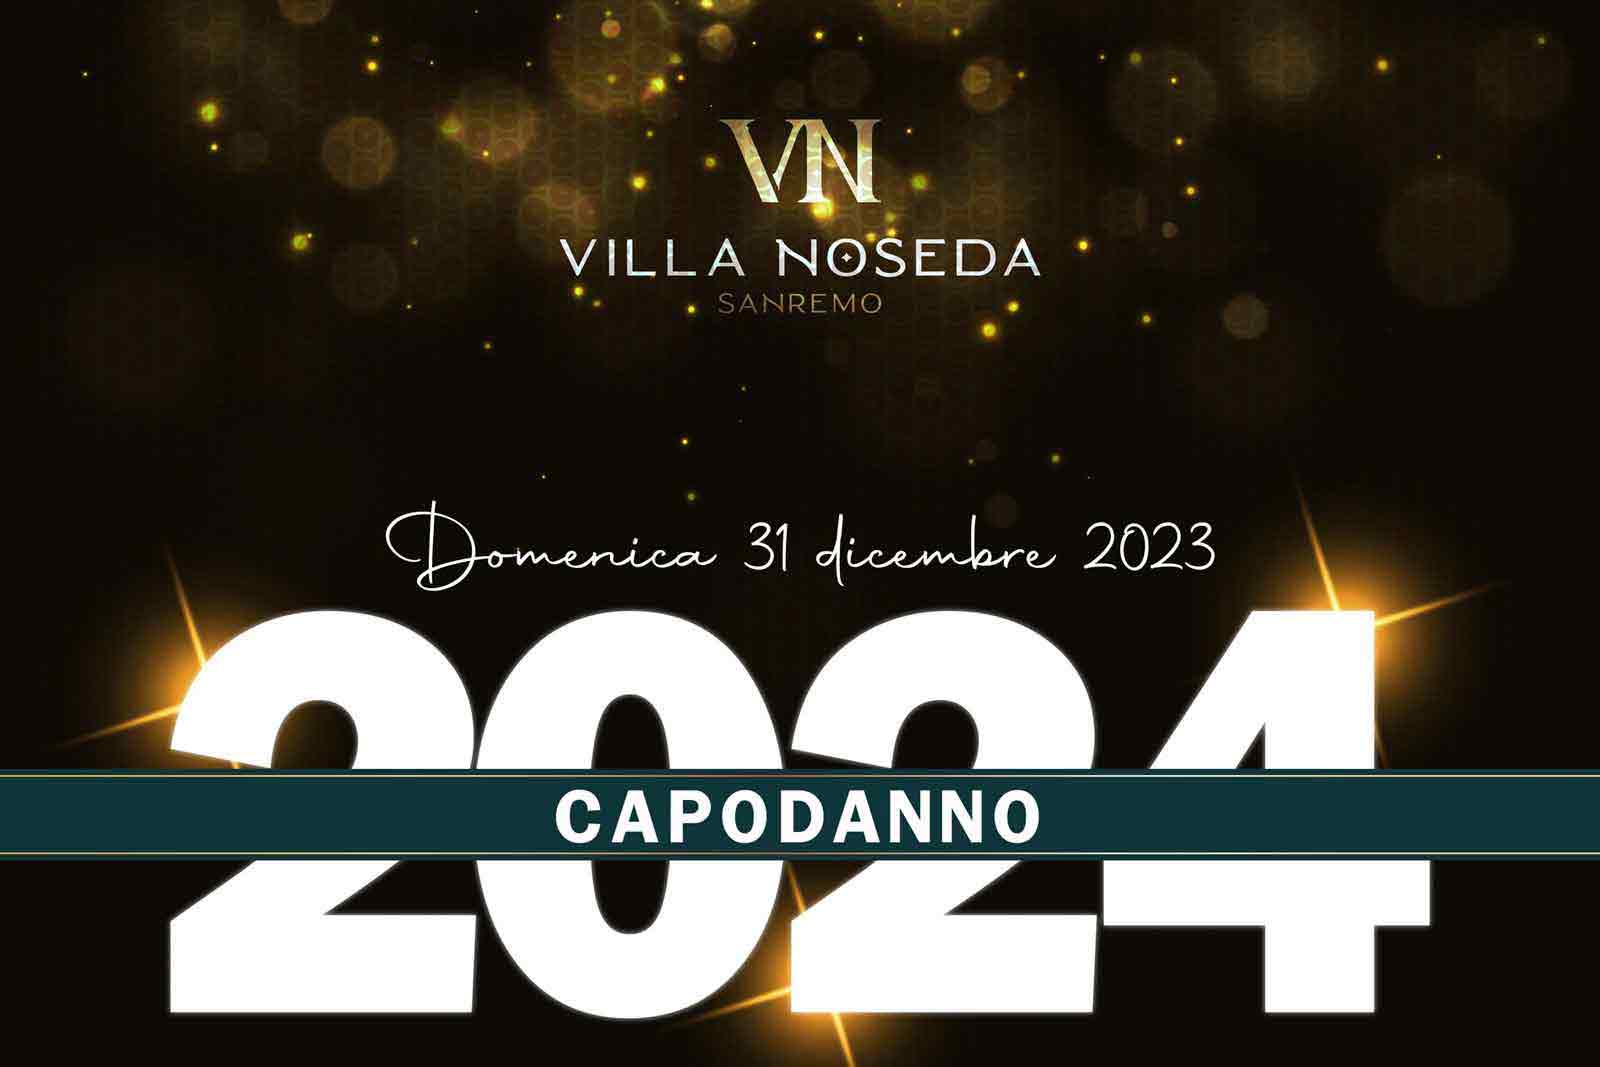 Capodanno Villa Noseda Sanremo